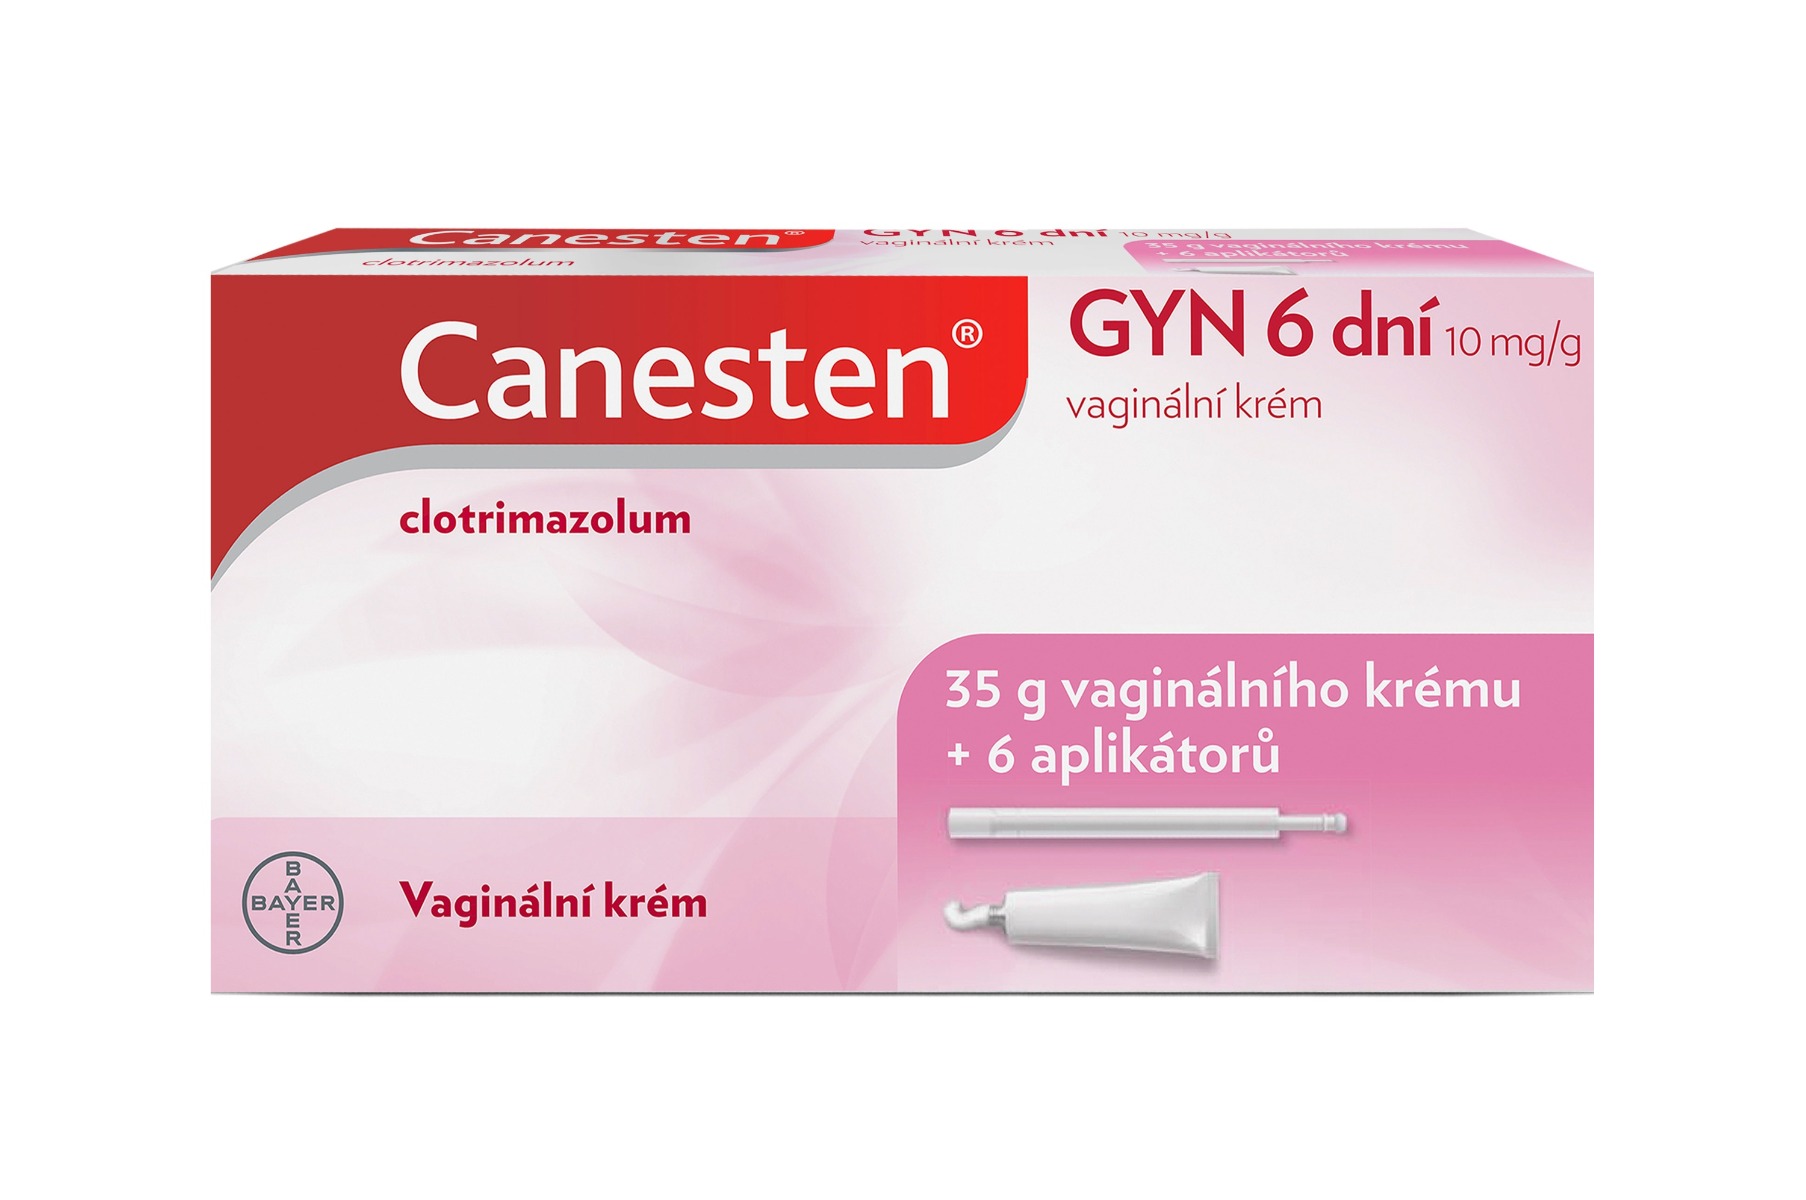 Canesten GYN 6 dní vaginální krém 35 g + aplikátor Canesten